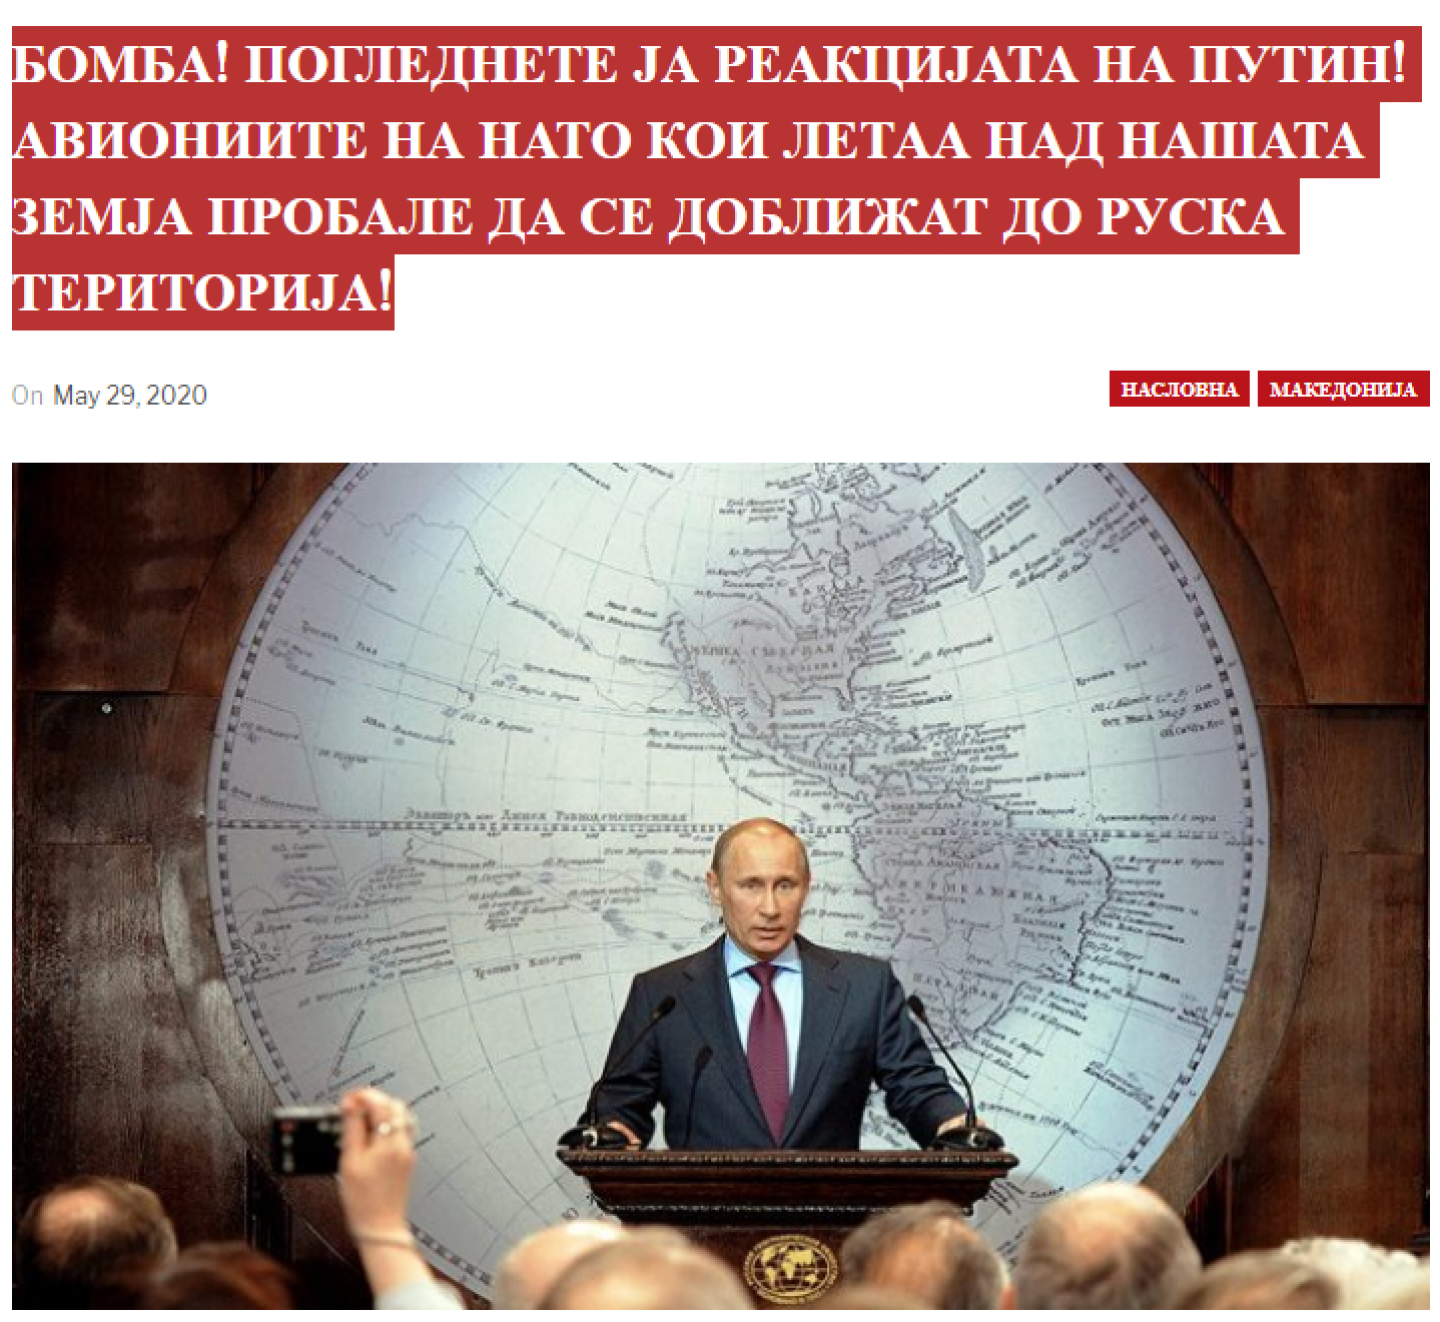 Screenshot nga artikulli i publikuar në mkdpress.site, web-faqe anonime e regjistruar që nuk ka domen MK, dhe që rregullisht publikon dezinformata dhe madhëron Putinin.